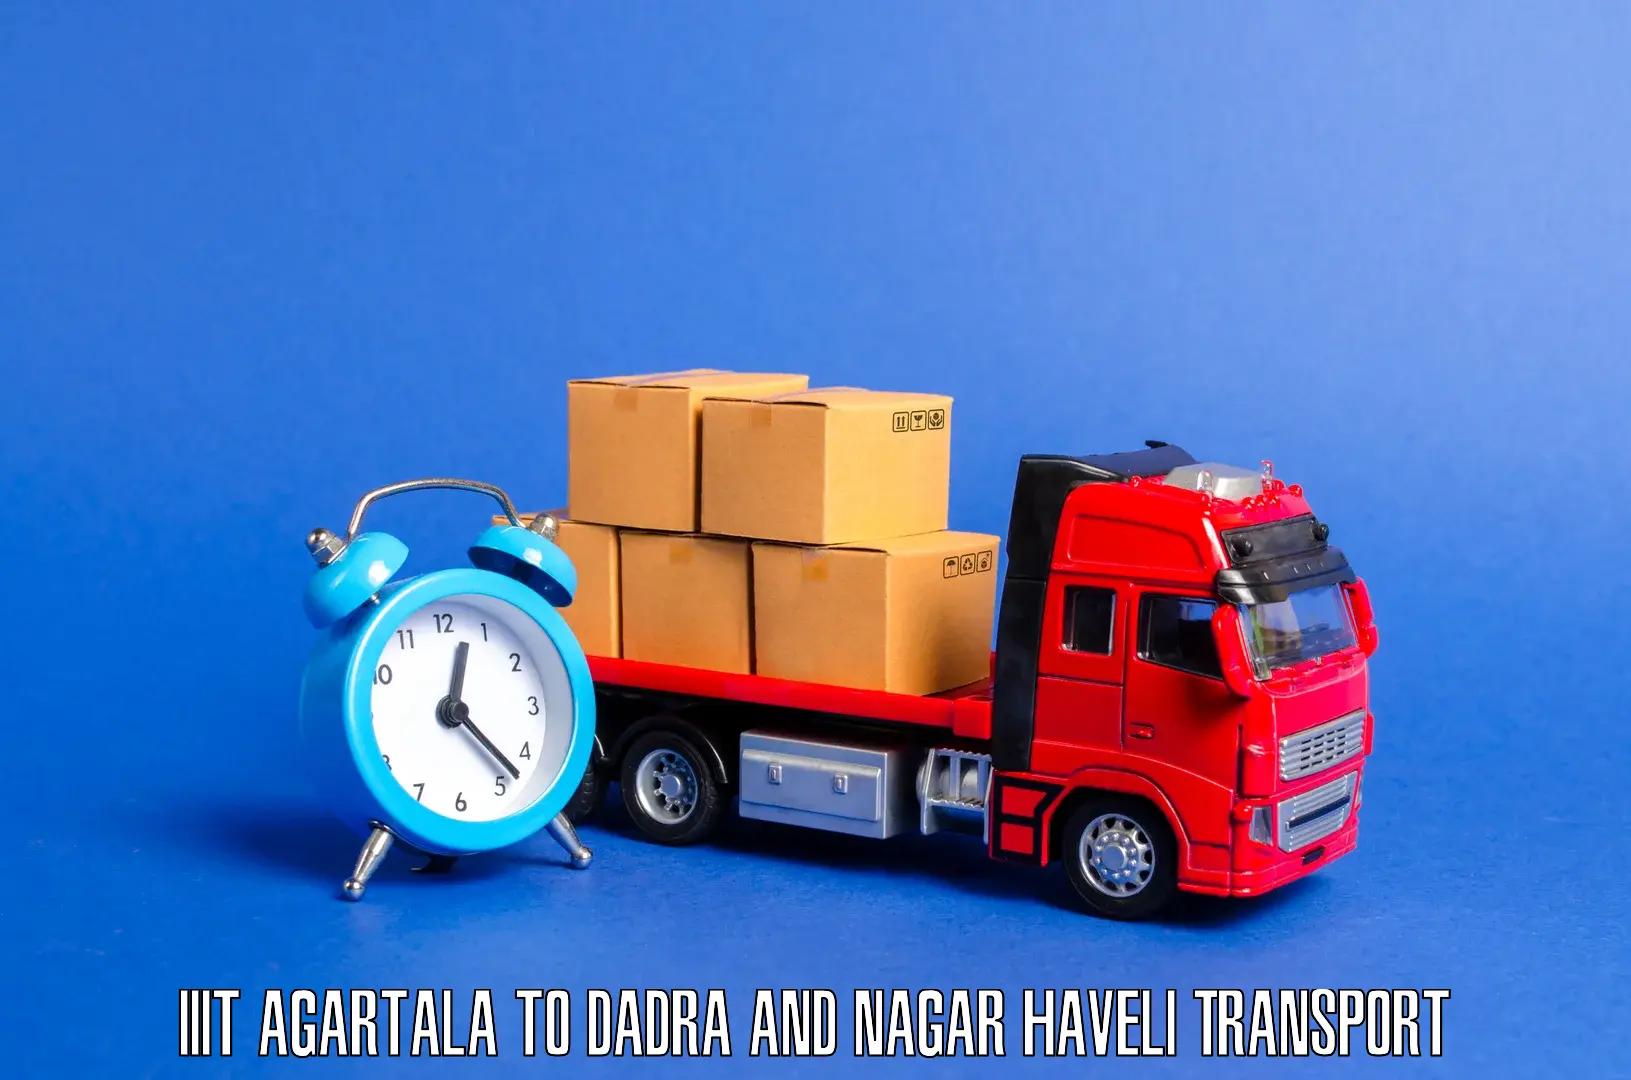 Cargo transport services IIIT Agartala to Silvassa